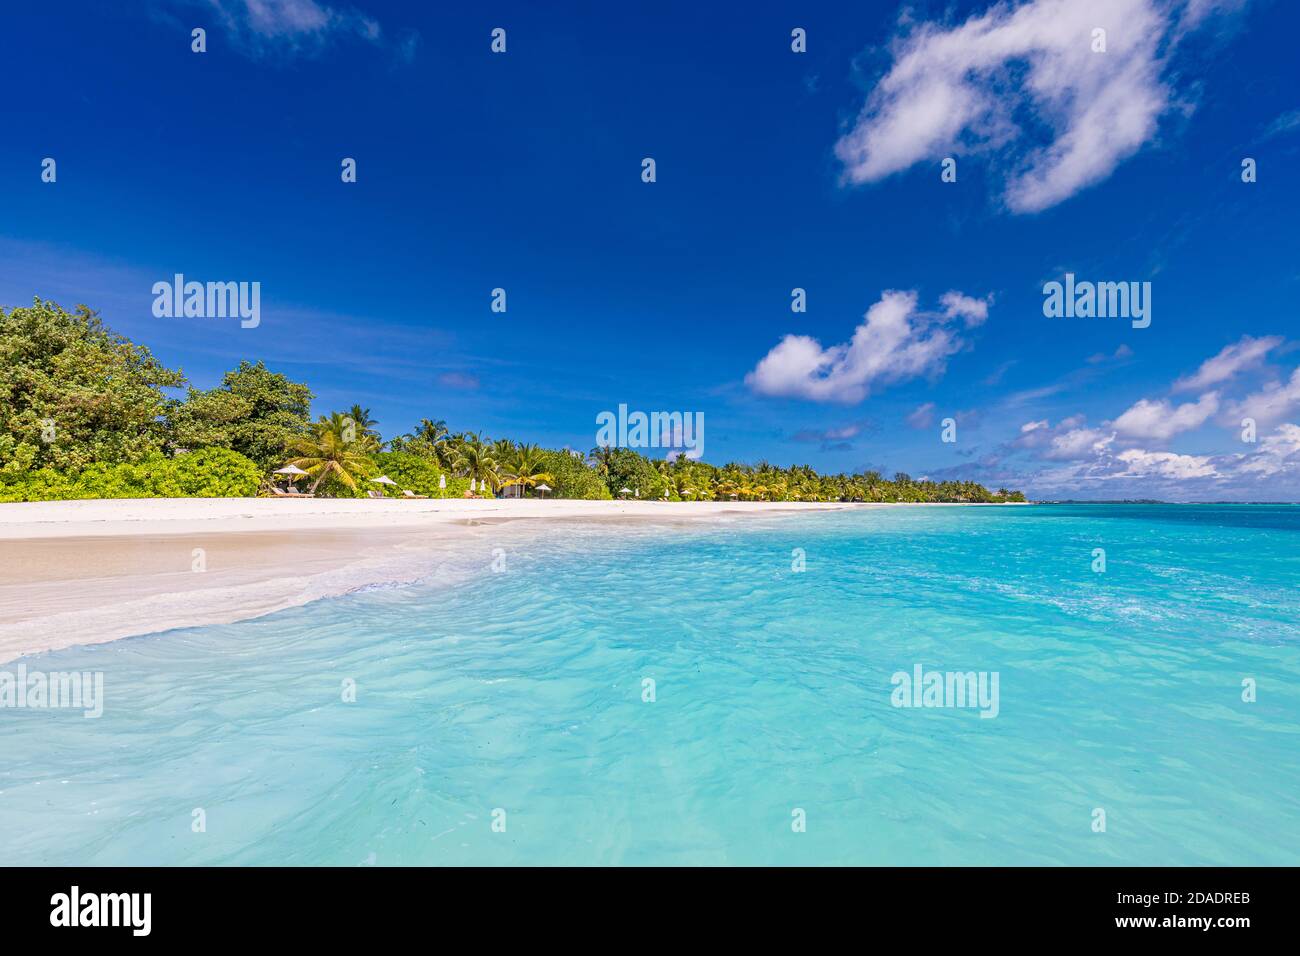 Tropische Strandlandschaft, erstaunliche Lagune, exotische Natur Muster. Weißer Sand, Palmen unter sonnenblauem Himmel. Idyllische, entspannende Strand Naturlandschaft Stockfoto